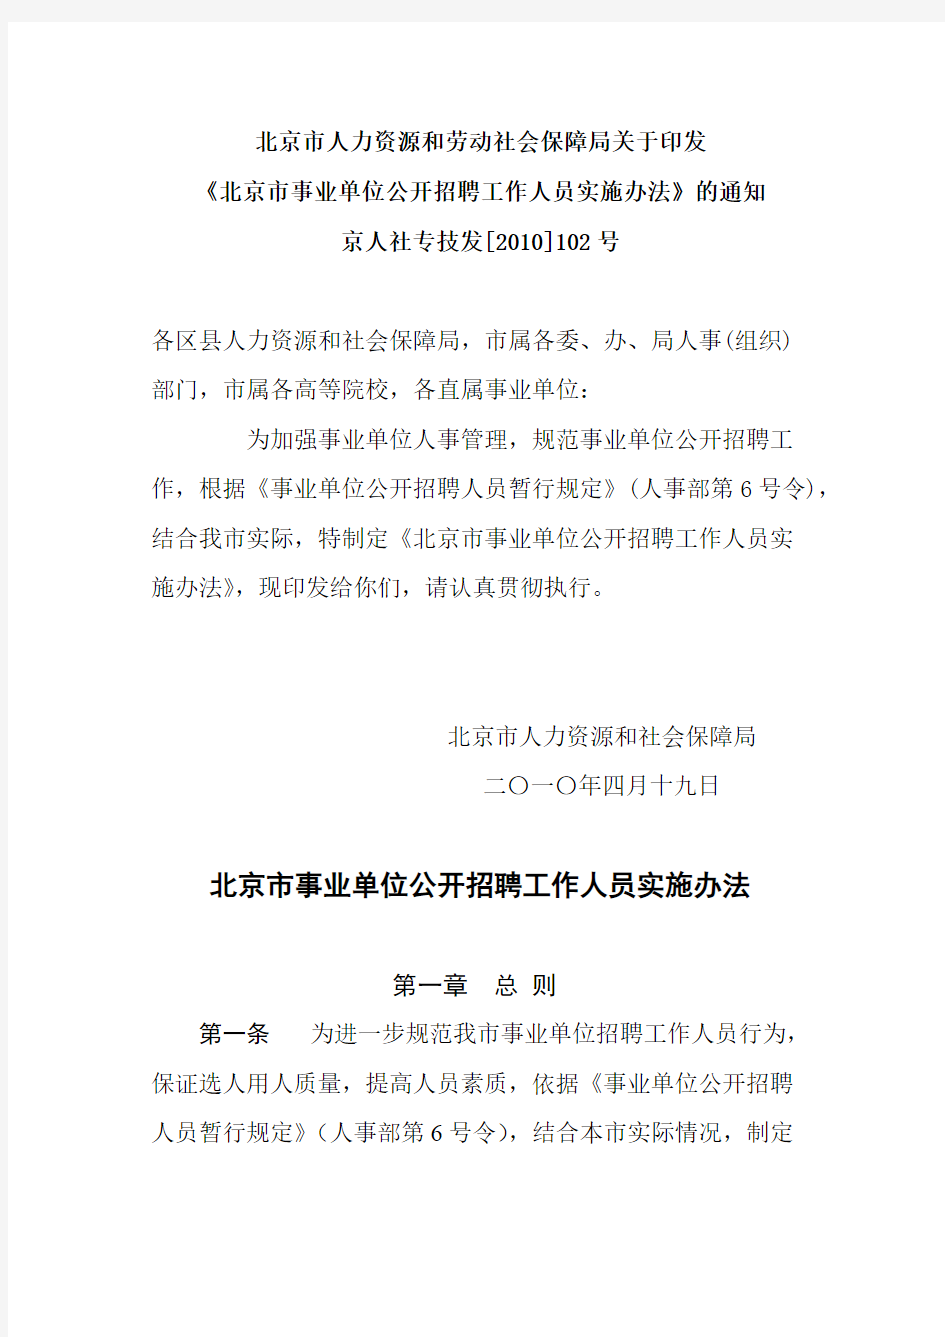 【免费下载】北京市事业单位公开招聘工作人员实施办法 京人社专技发102号